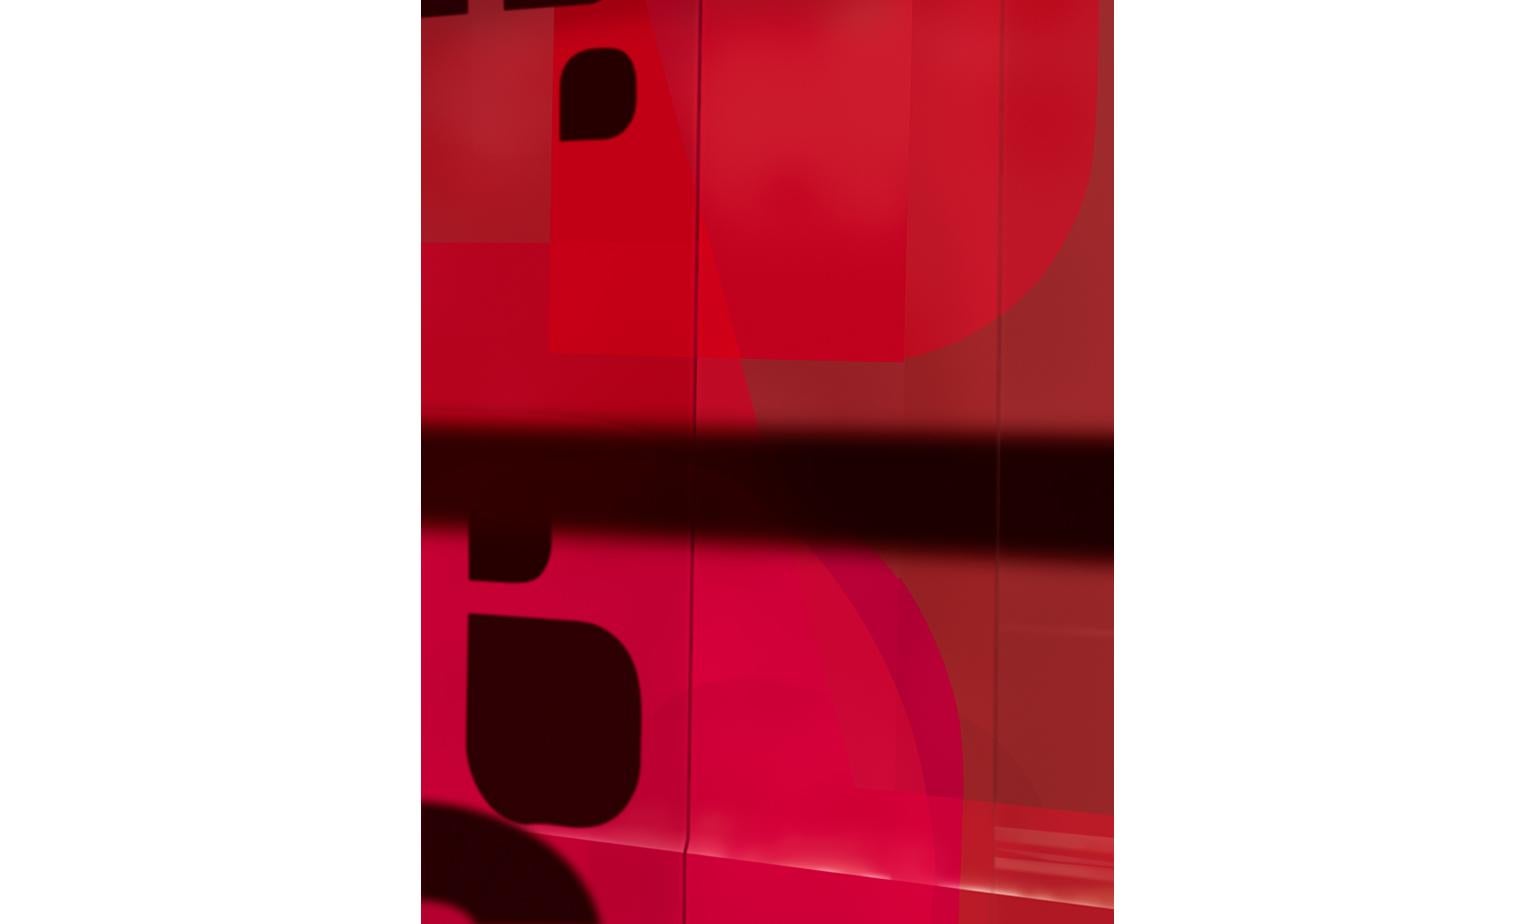 großformatige, monochromatische, abstrakte Betrachtung geometrischer Architekturelemente, aus Raymond Meiers Serie Renderings

Rotes Fenster (Renderings 05) von Raymond Meier

limitierte Auflage von 5 + 3AP
Rahmen aus Aluminium (0,5